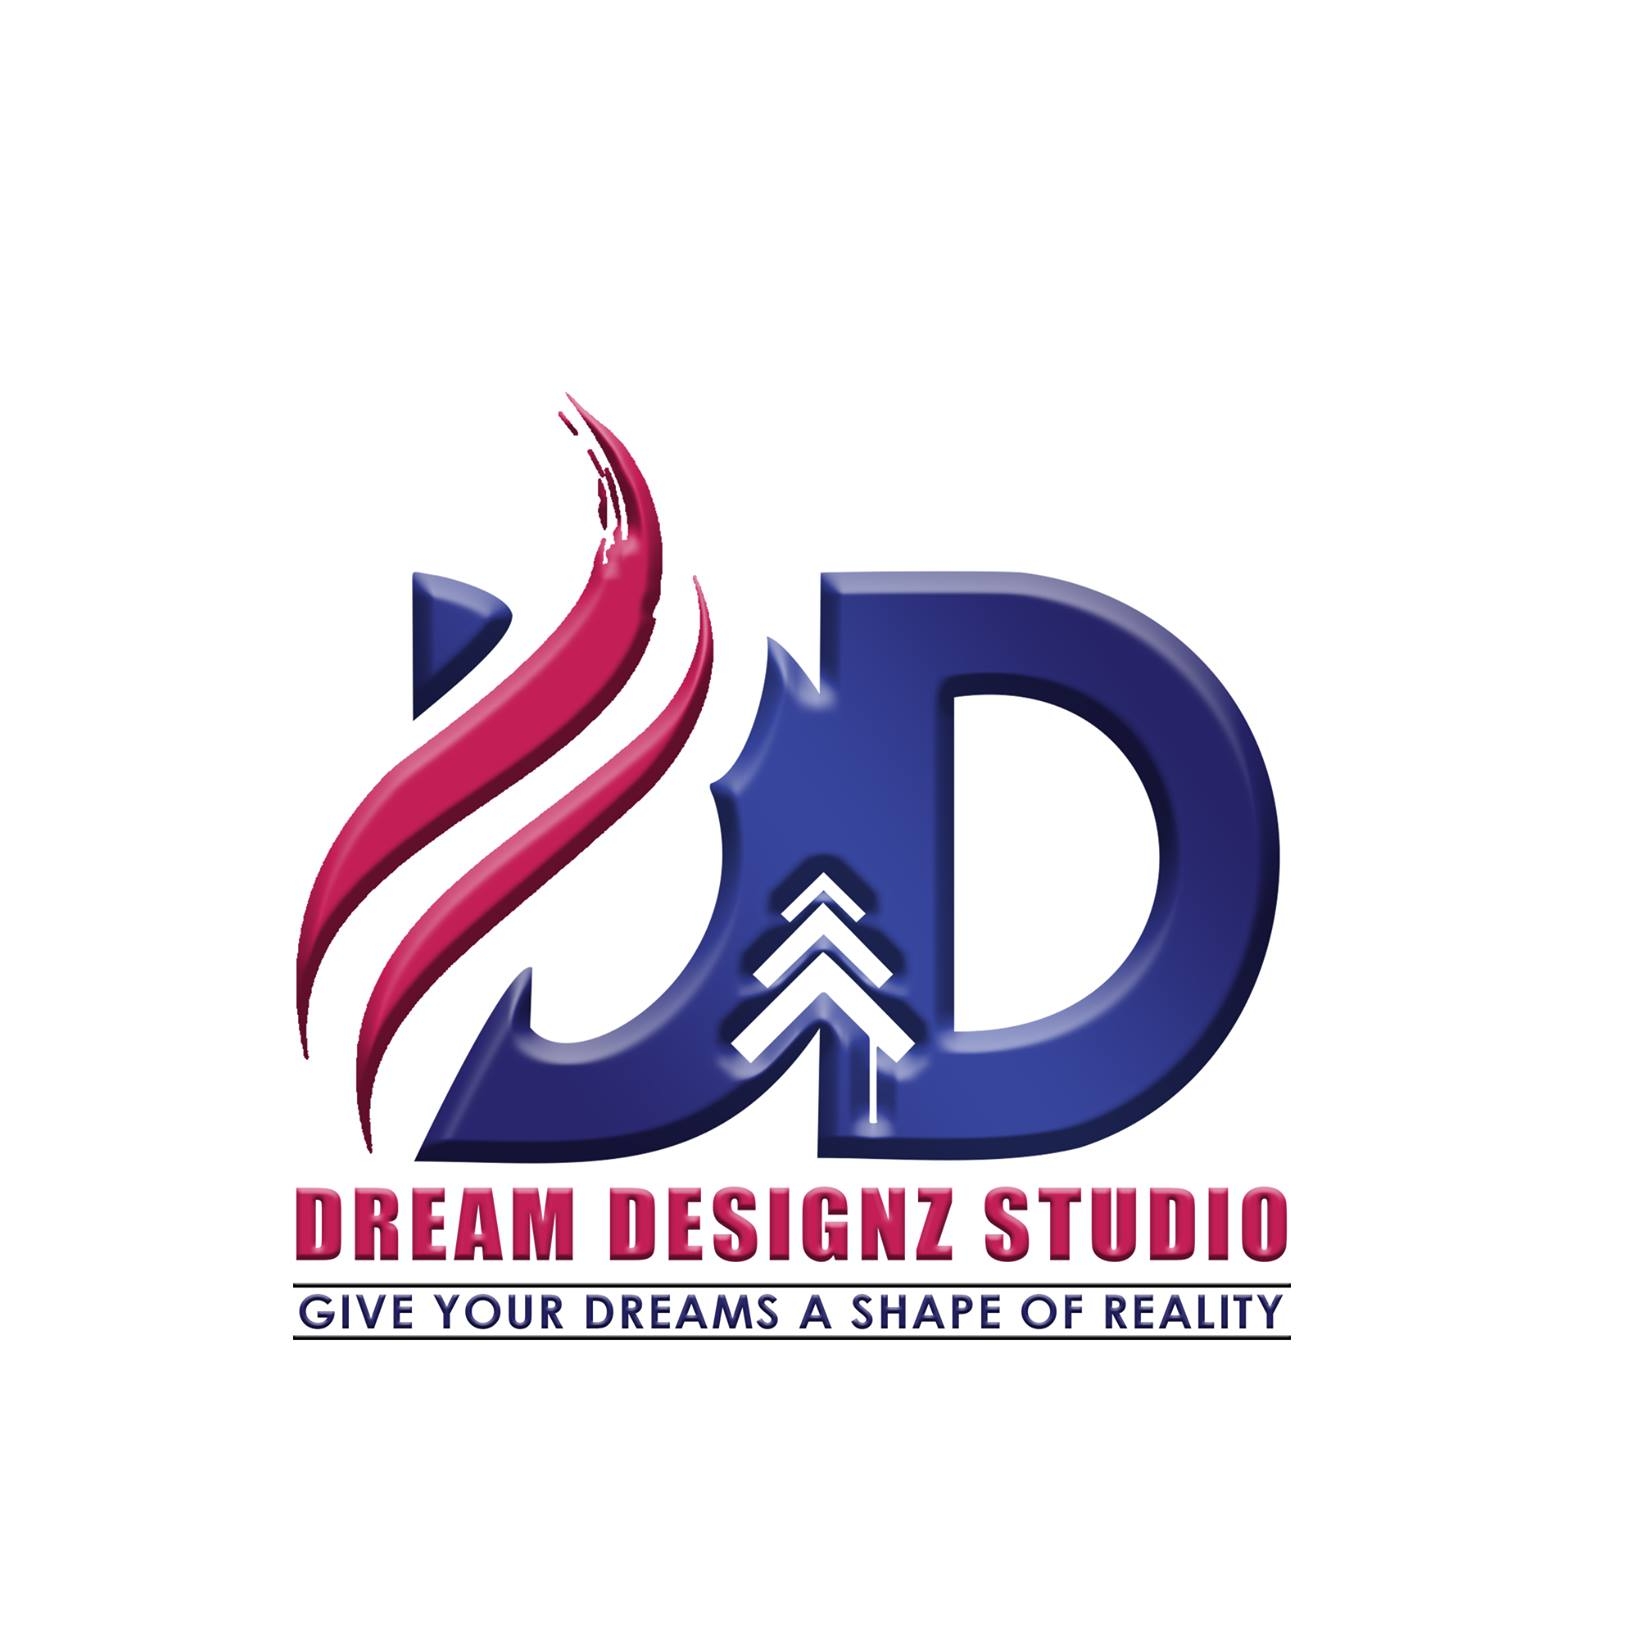 DREAM DESIGNZ STUDIO|Architect|Professional Services